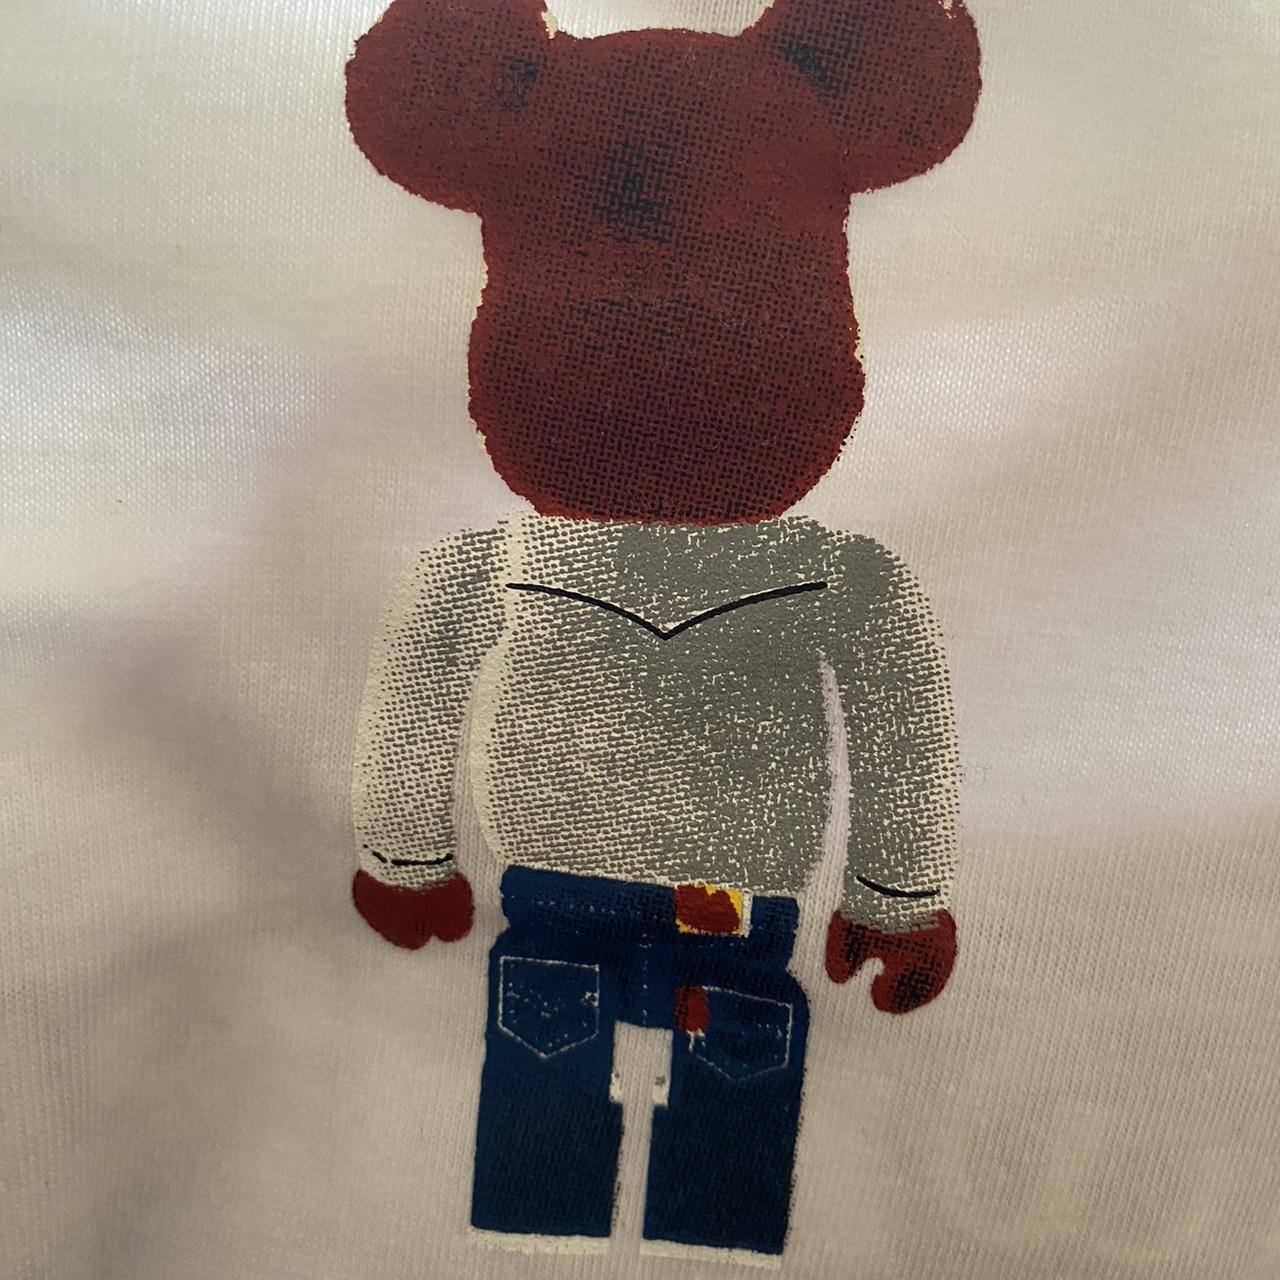 Louis Vutton x Bear Brick Shirt 😋 - Never worn, I - Depop